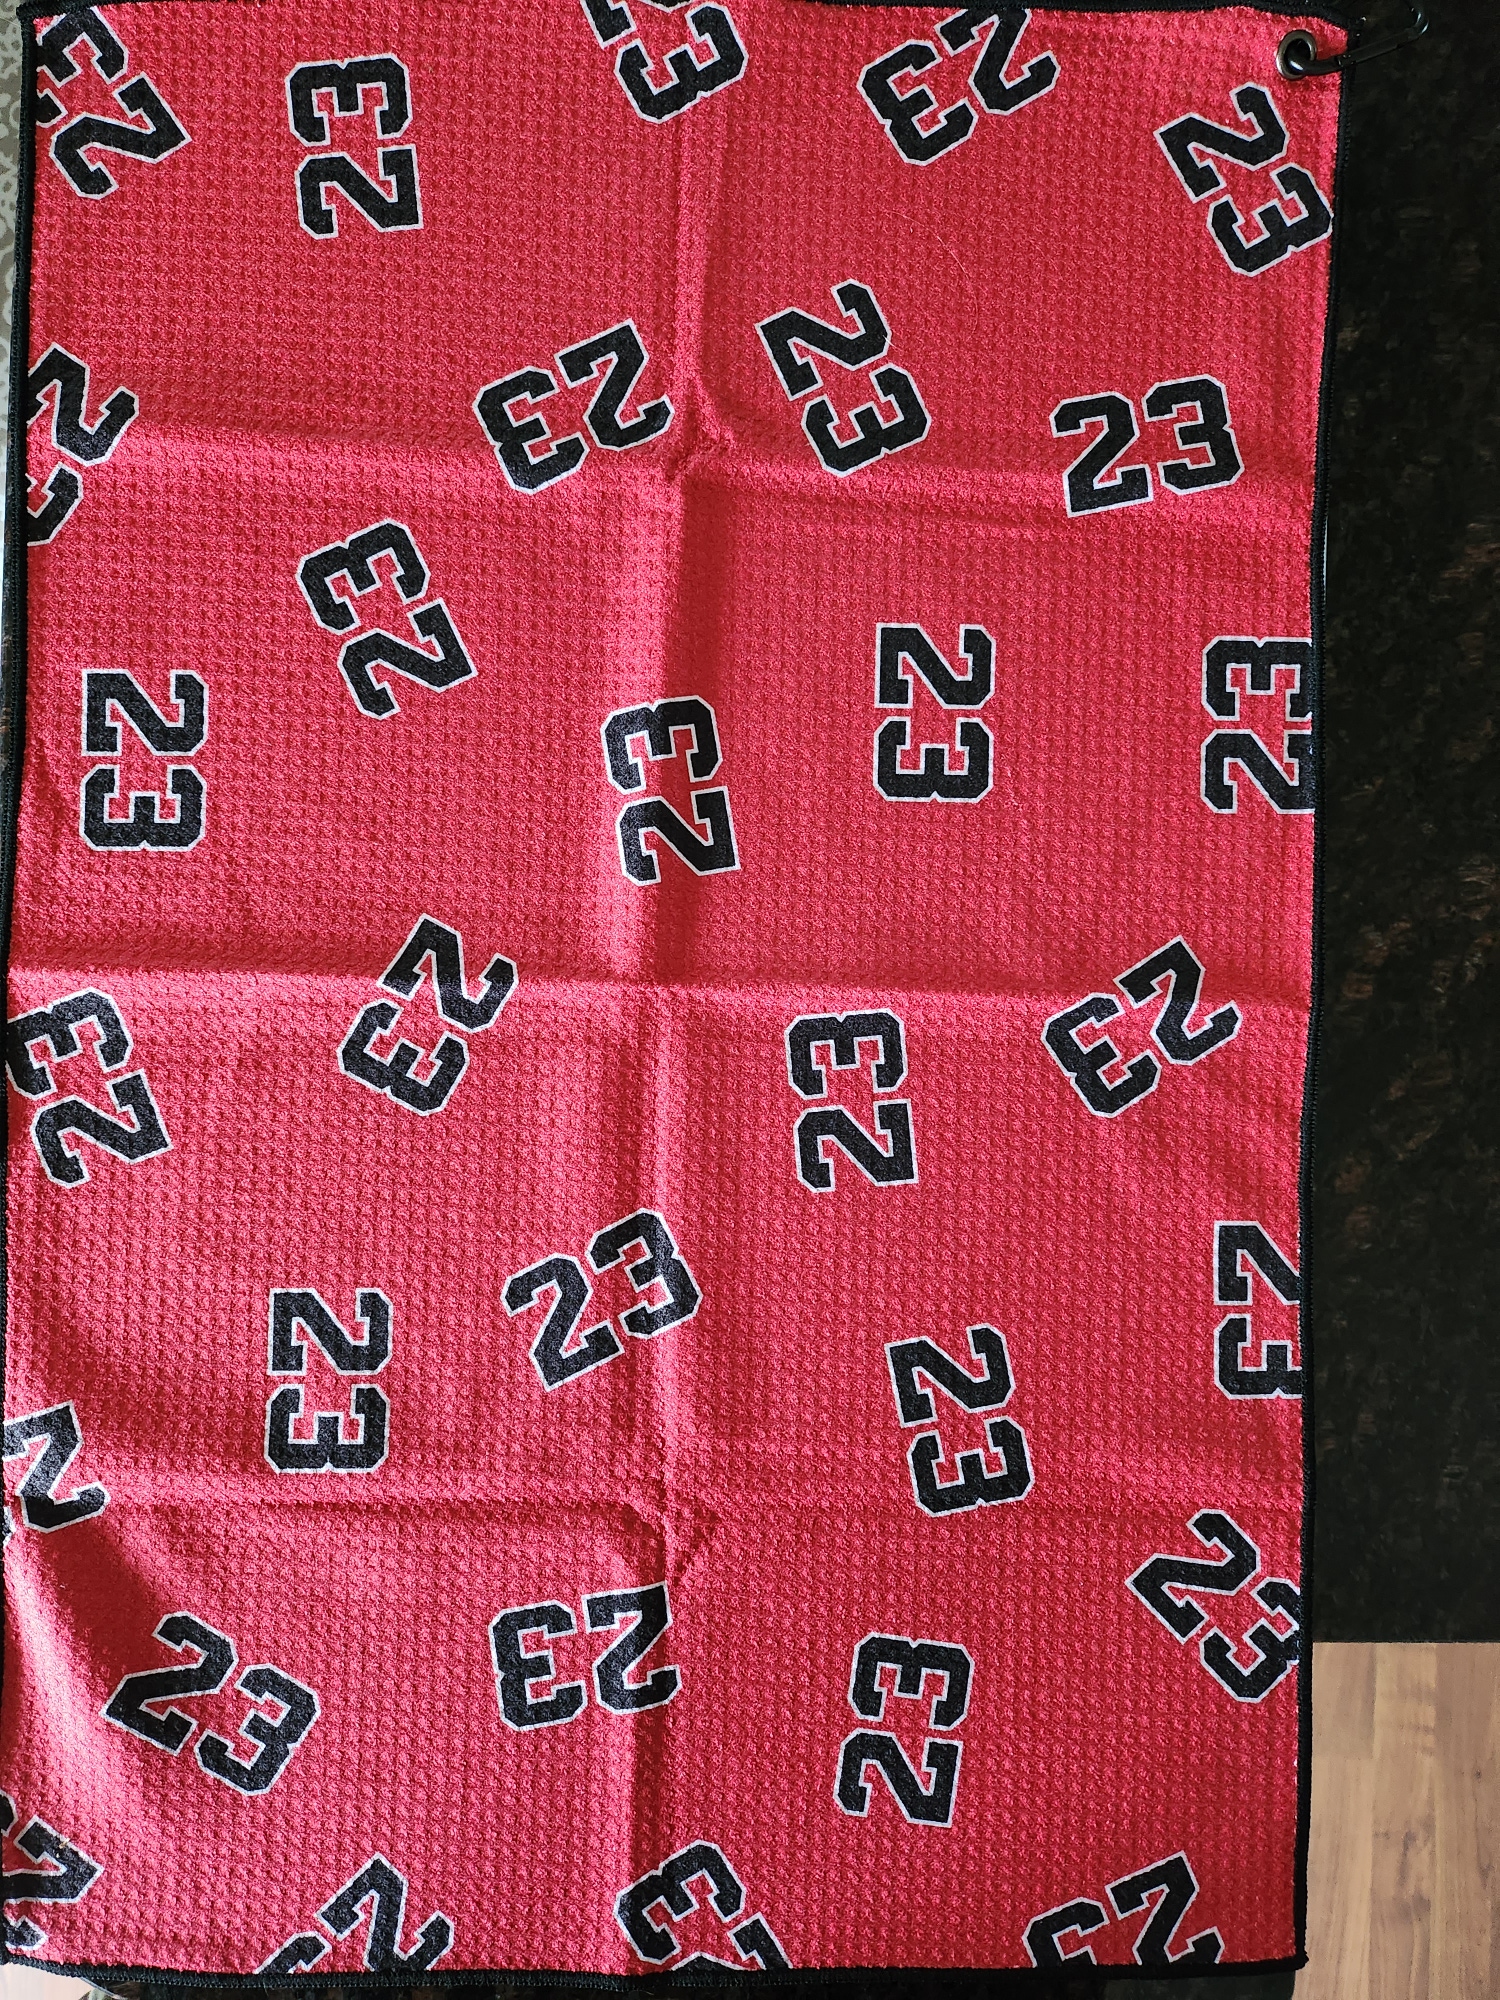 New Jordan "23" Towel